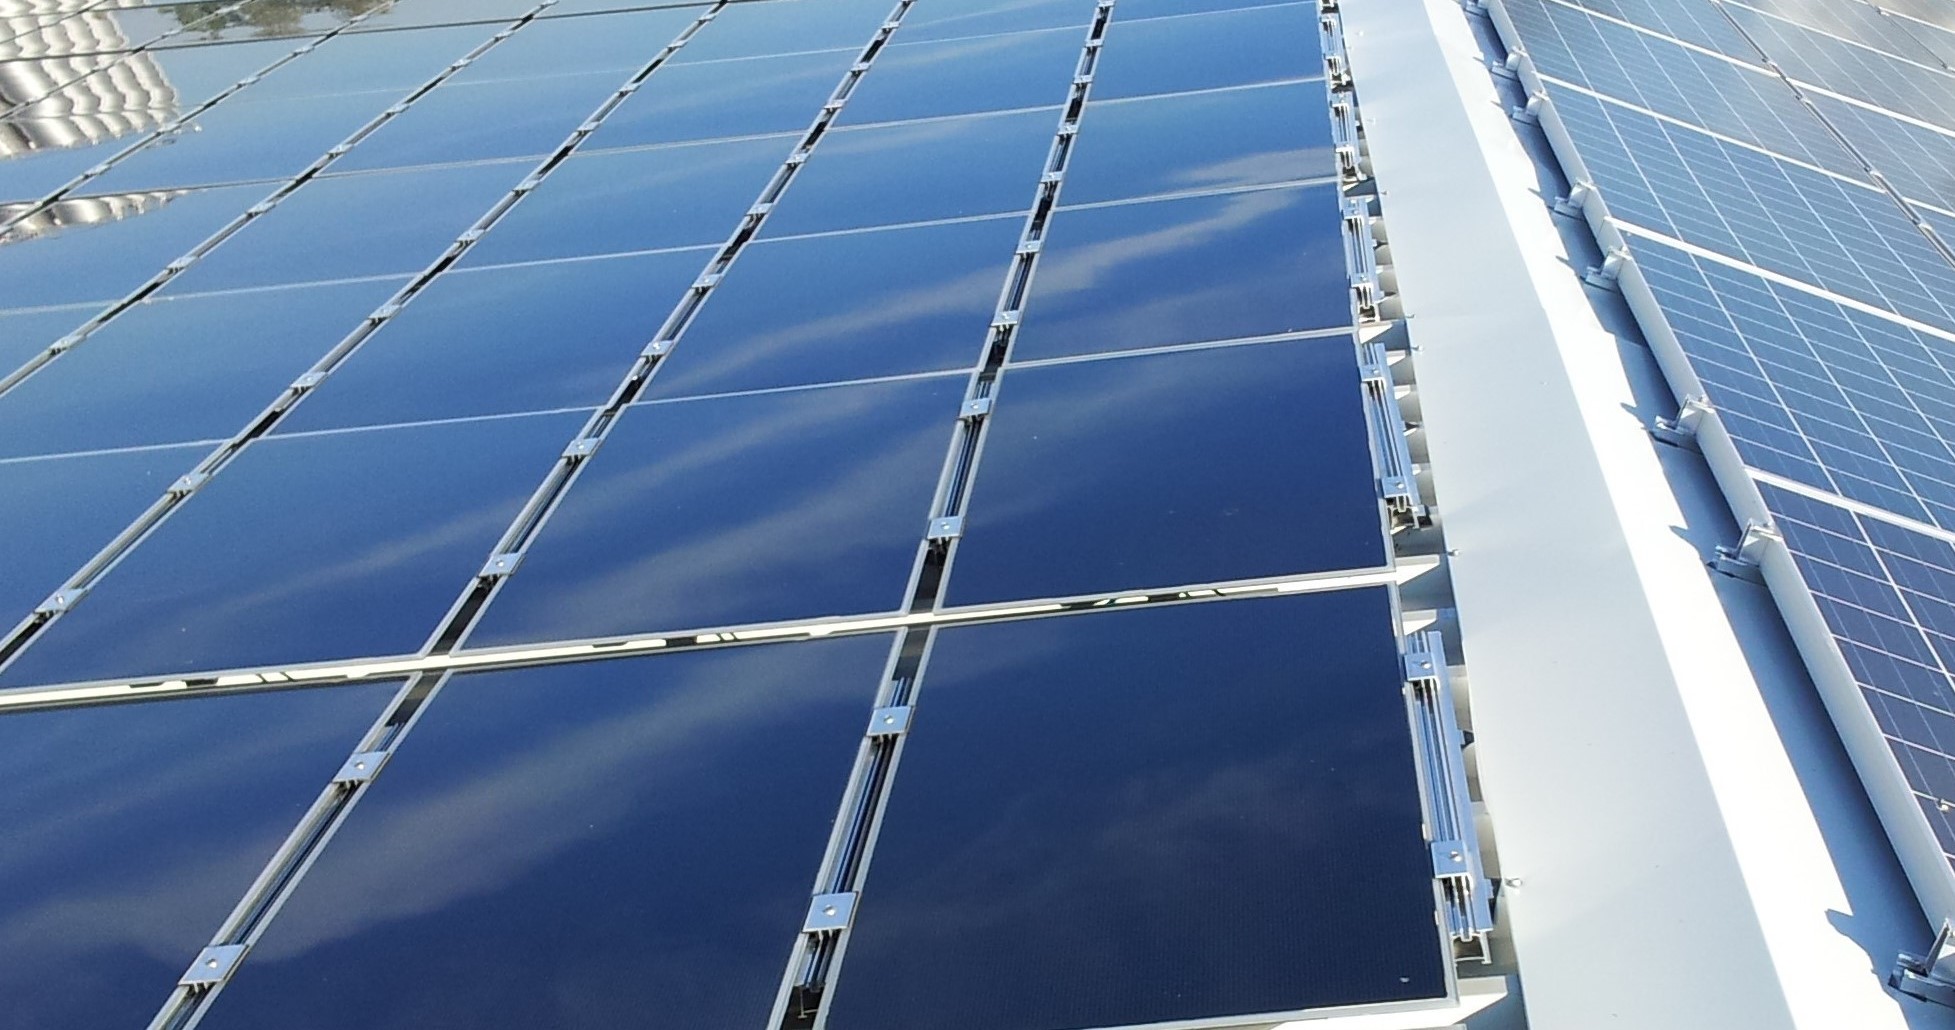 15.01.2023 - Ο όμιλος SolarKapital ολοκληρώνει το 2022 με μεγάλη επιτυχία